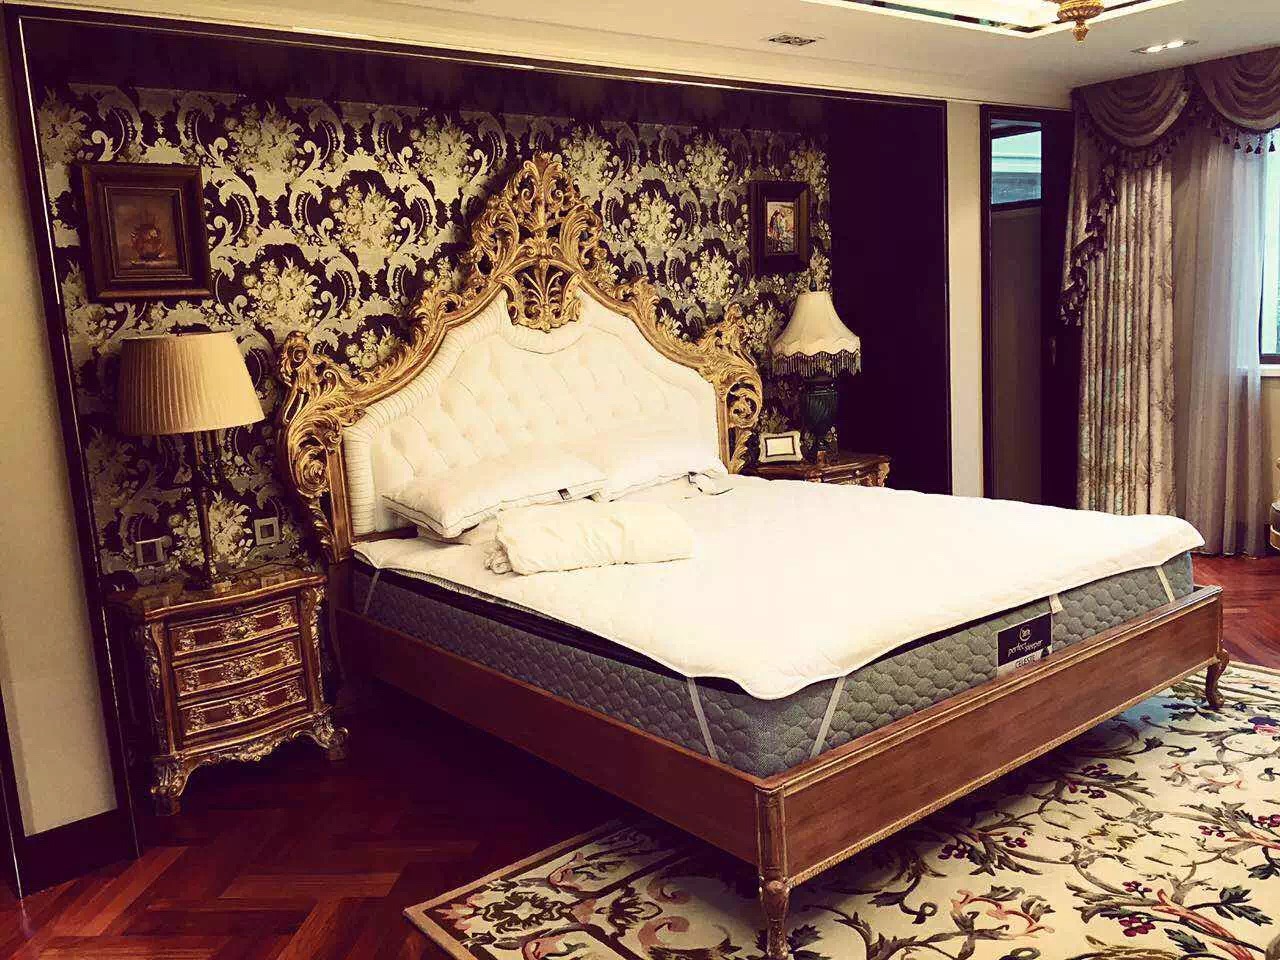 法式 原创国际 别墅设计 品质墅装 全案 卧室图片来自原创国际别墅装饰在公园1872的分享